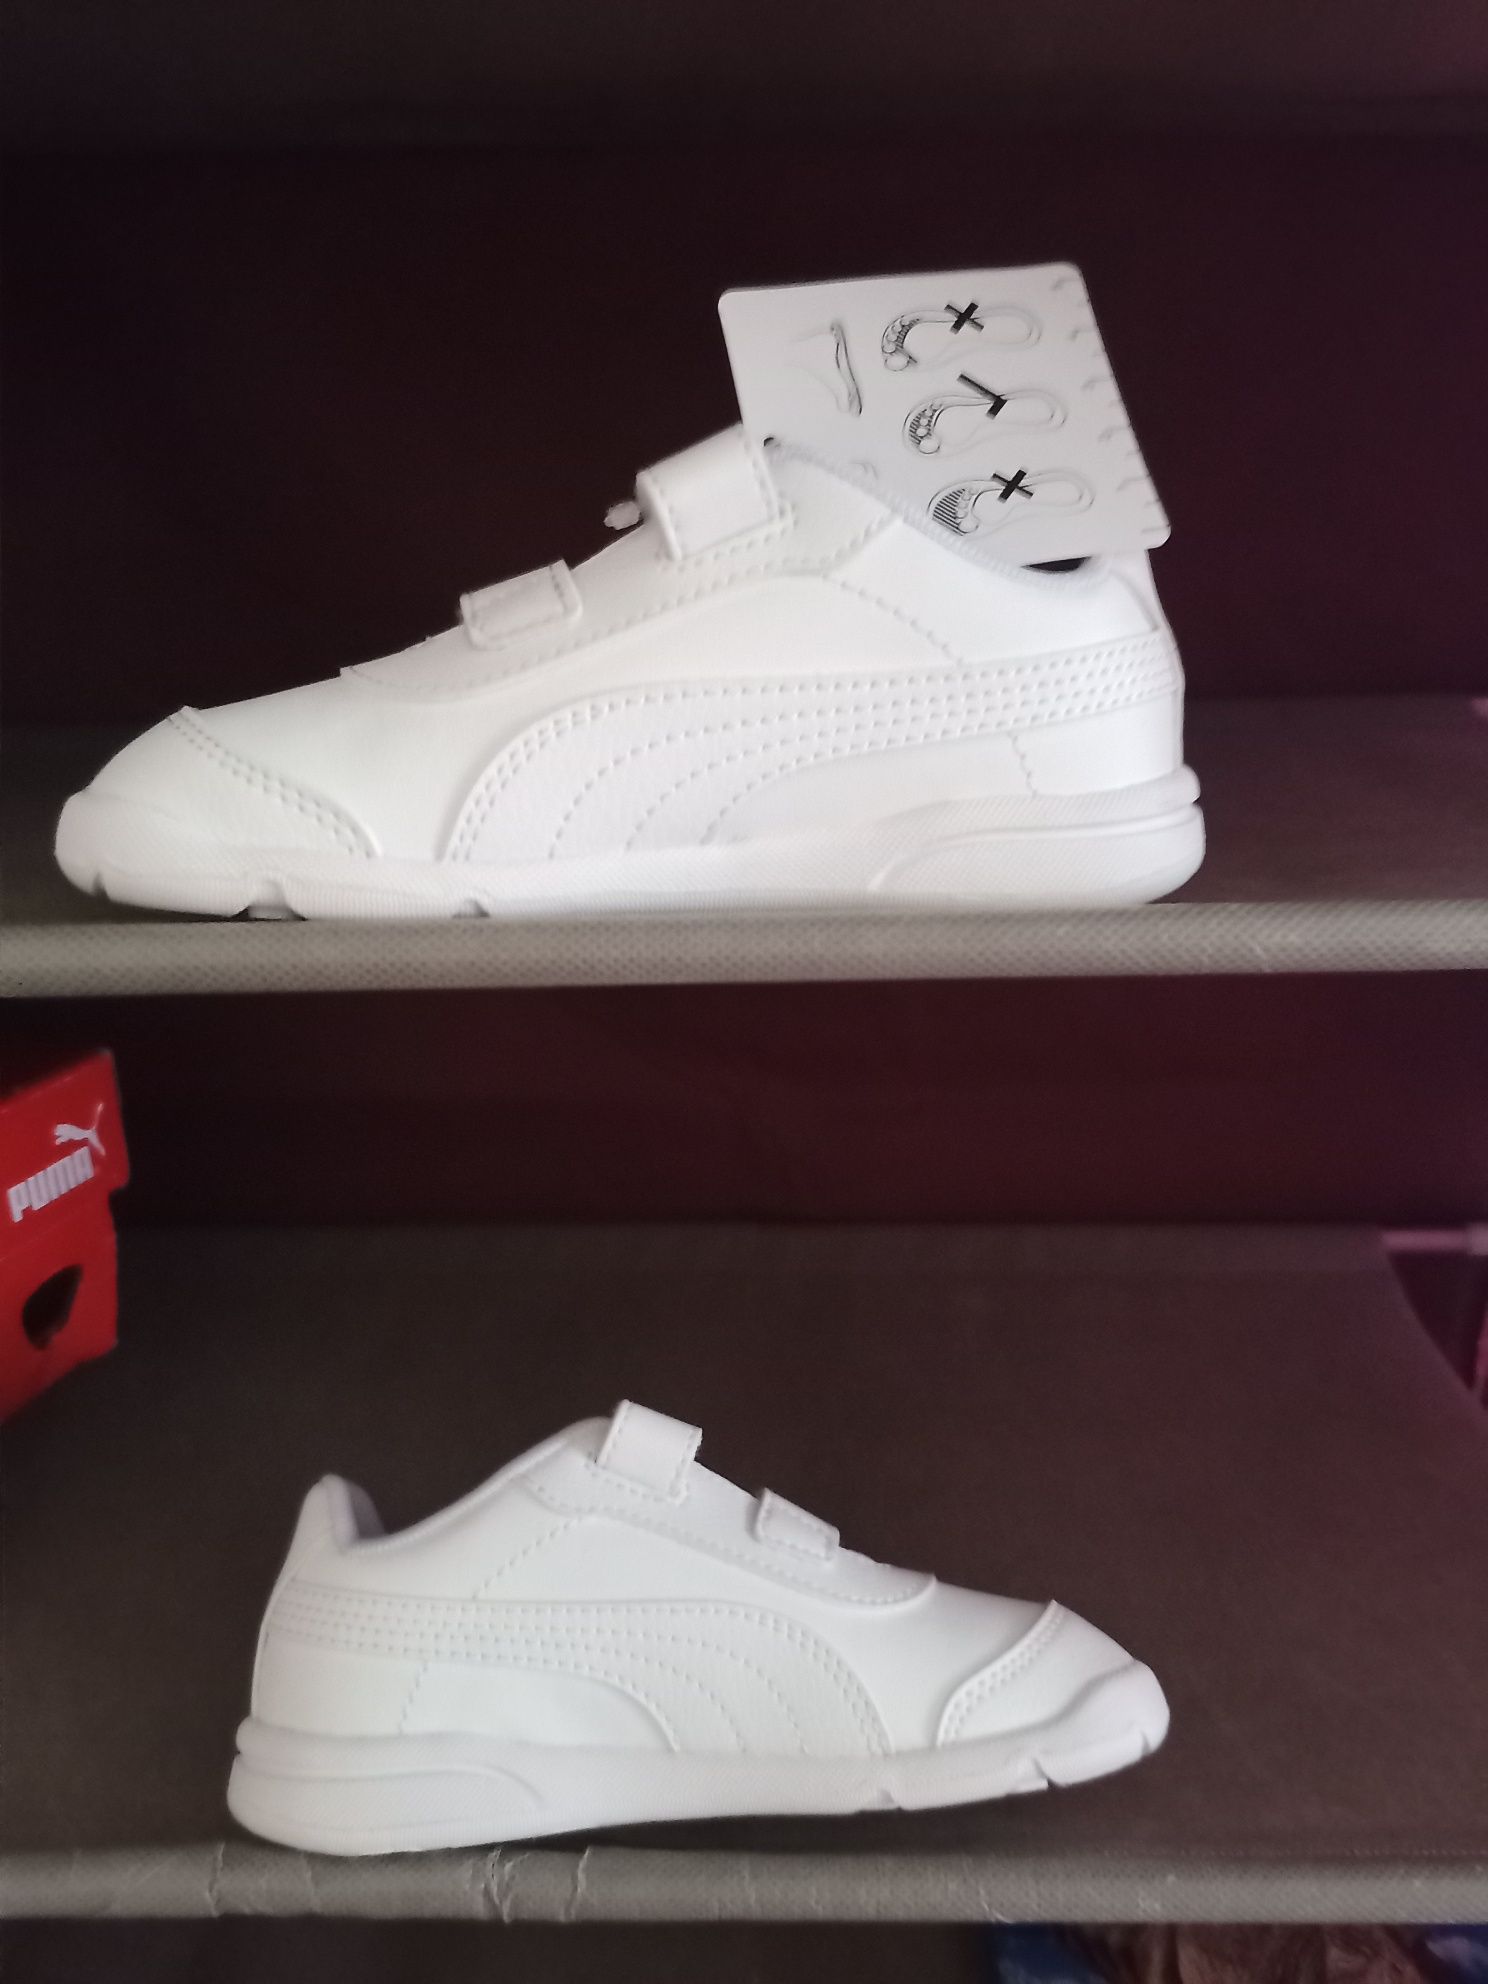 Białe buty puma stepflex 27 wkładka 17, 5 cm rzepy